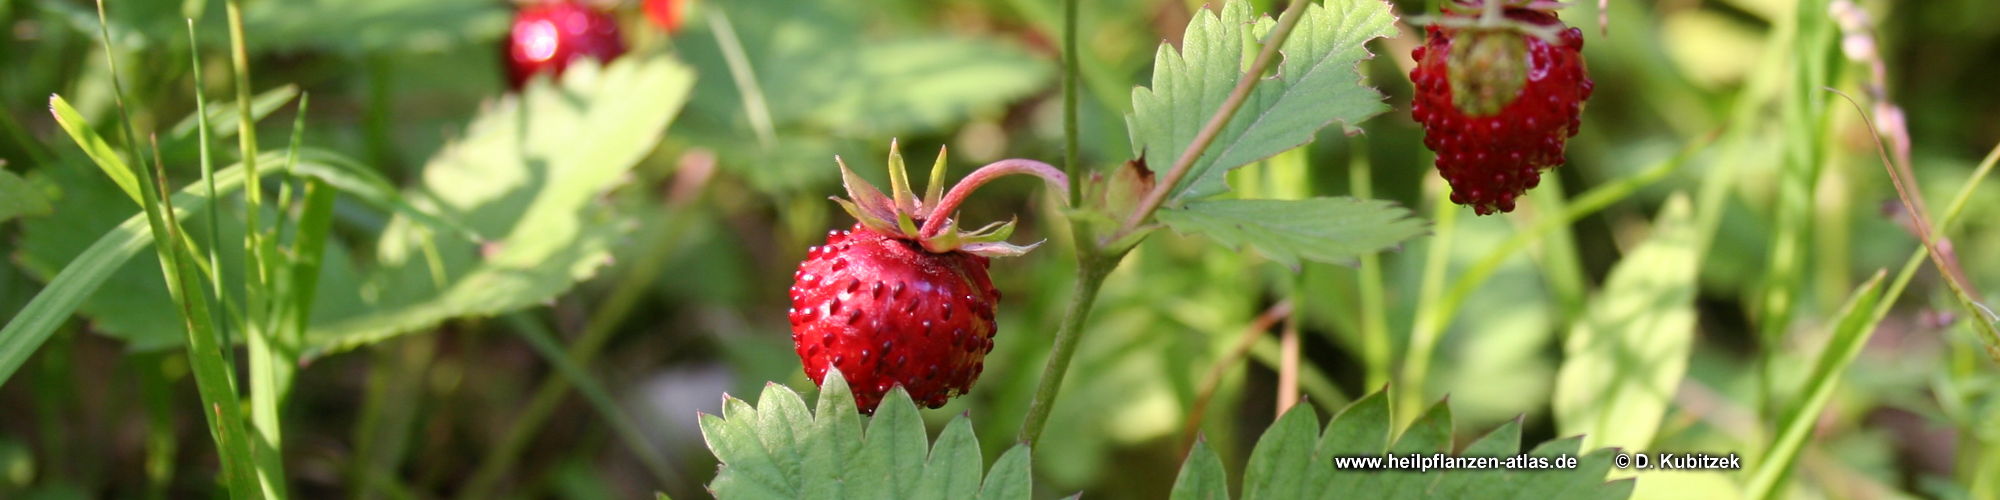 Fragaria vesca Wald-Erdbeere für Herbarium Heilpflanze Rosengewächse 